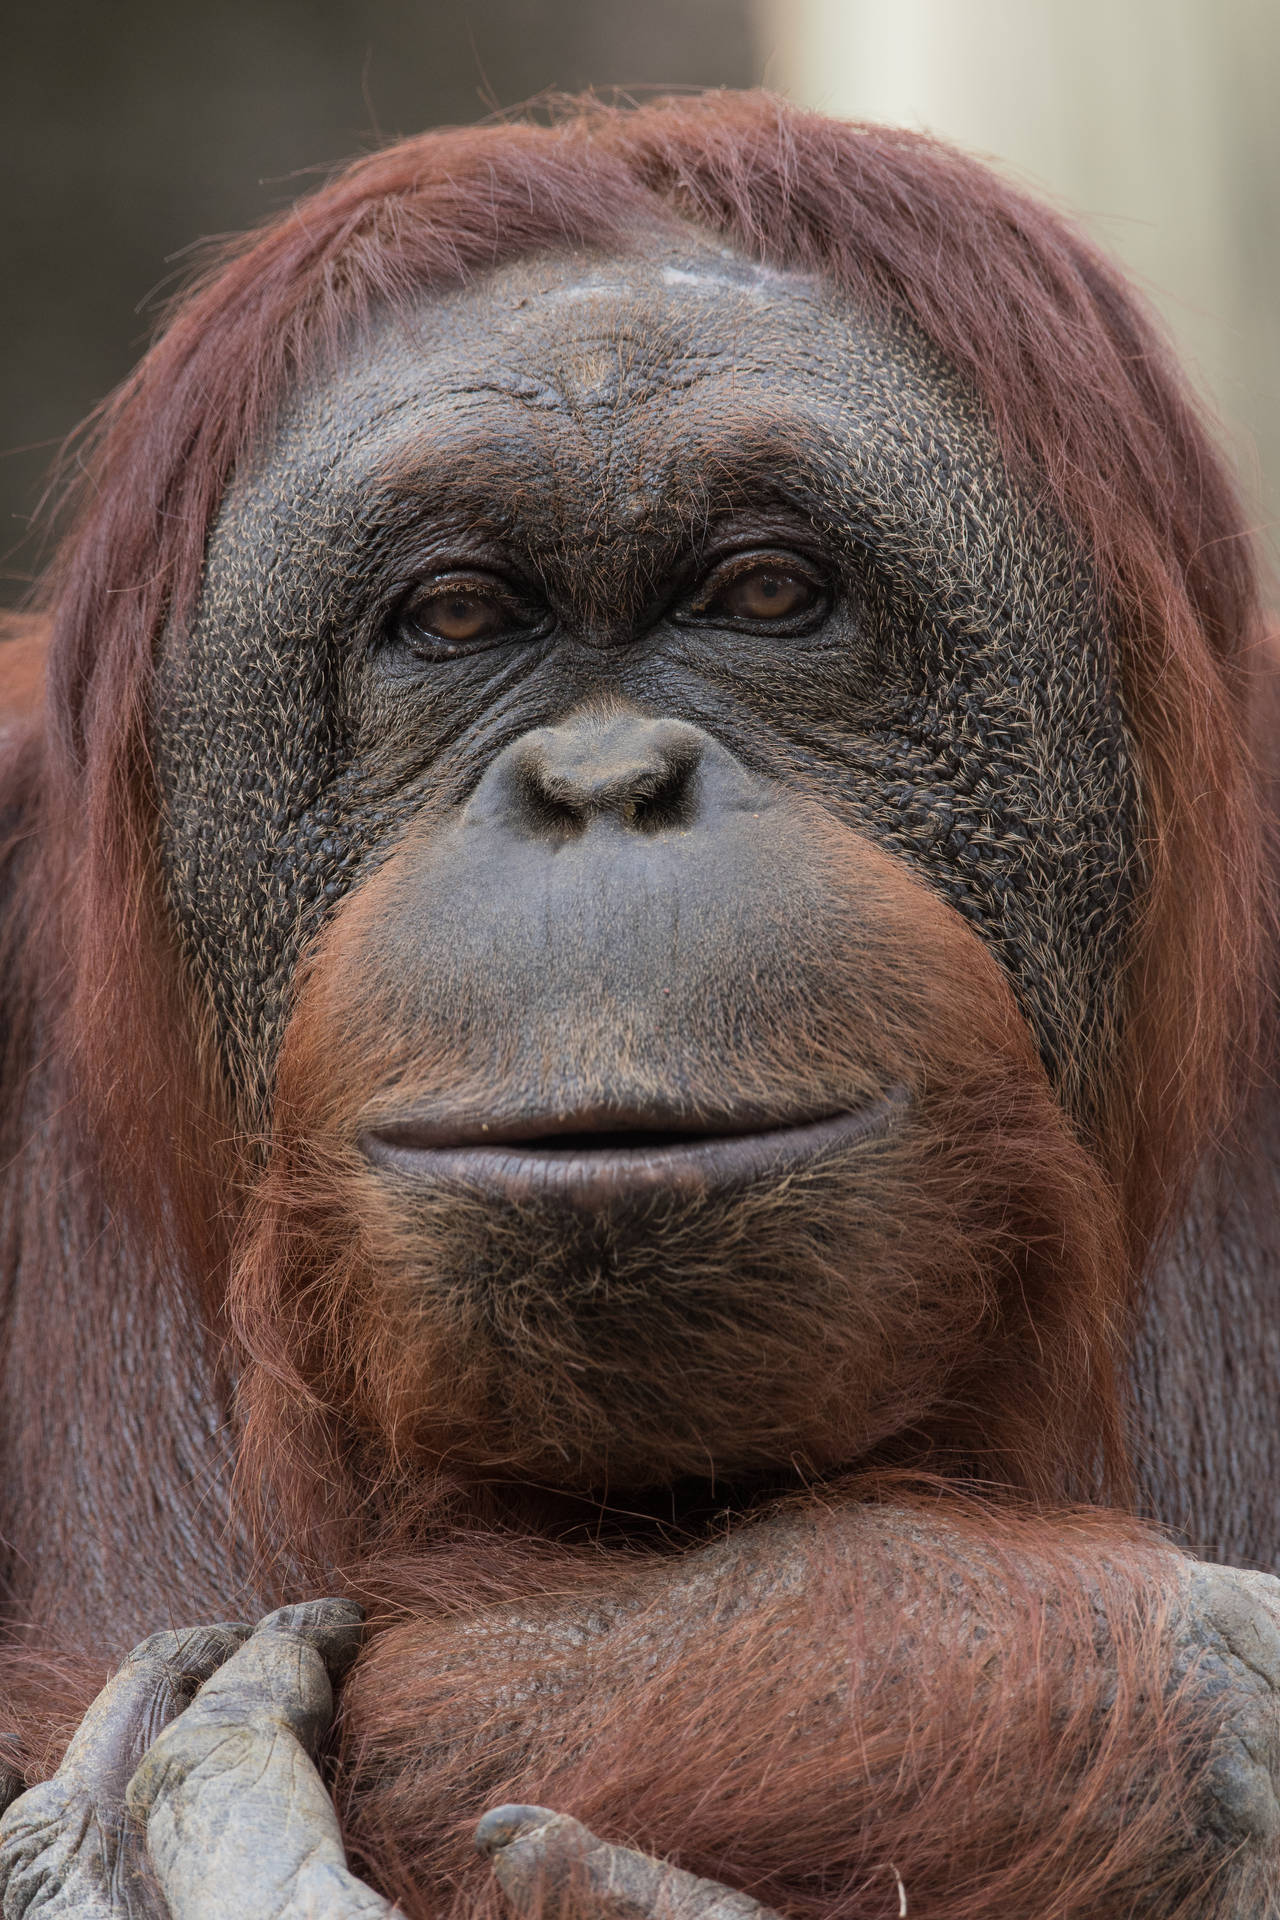 Orangutangupp Nära - Fantastiskt Djur. Detta Skulle Kunna Vara En Fantastisk Bild För Dator- Eller Mobilbakgrund. Wallpaper